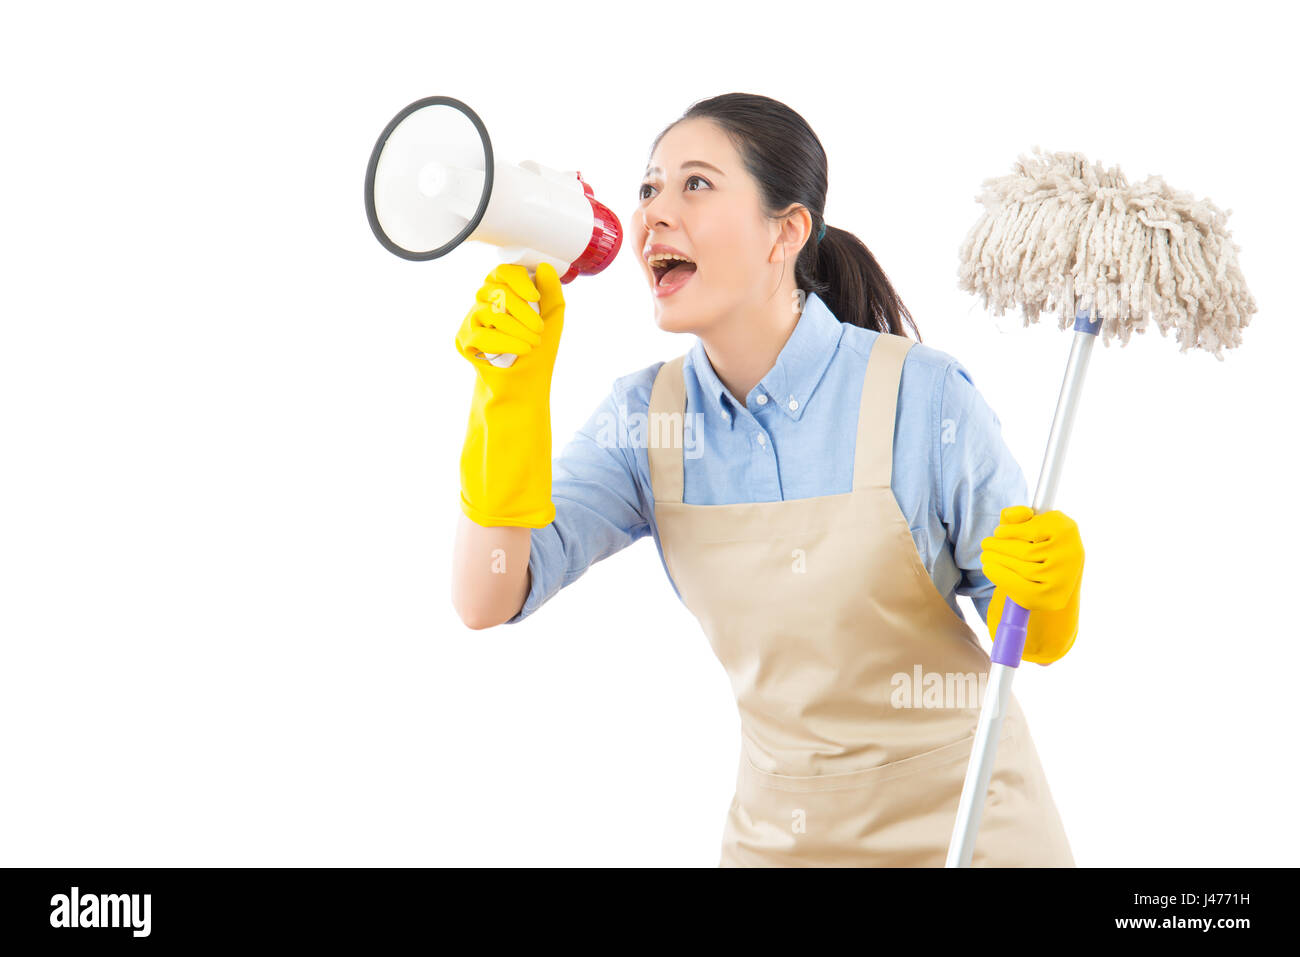 Putzfrau waschen Boden mit Mopp und Holding Lautsprecher ruft jeder beim Frühjahrsputz. Multikulturelle chinesische asiatische Hausfrau isolieren Stockfoto